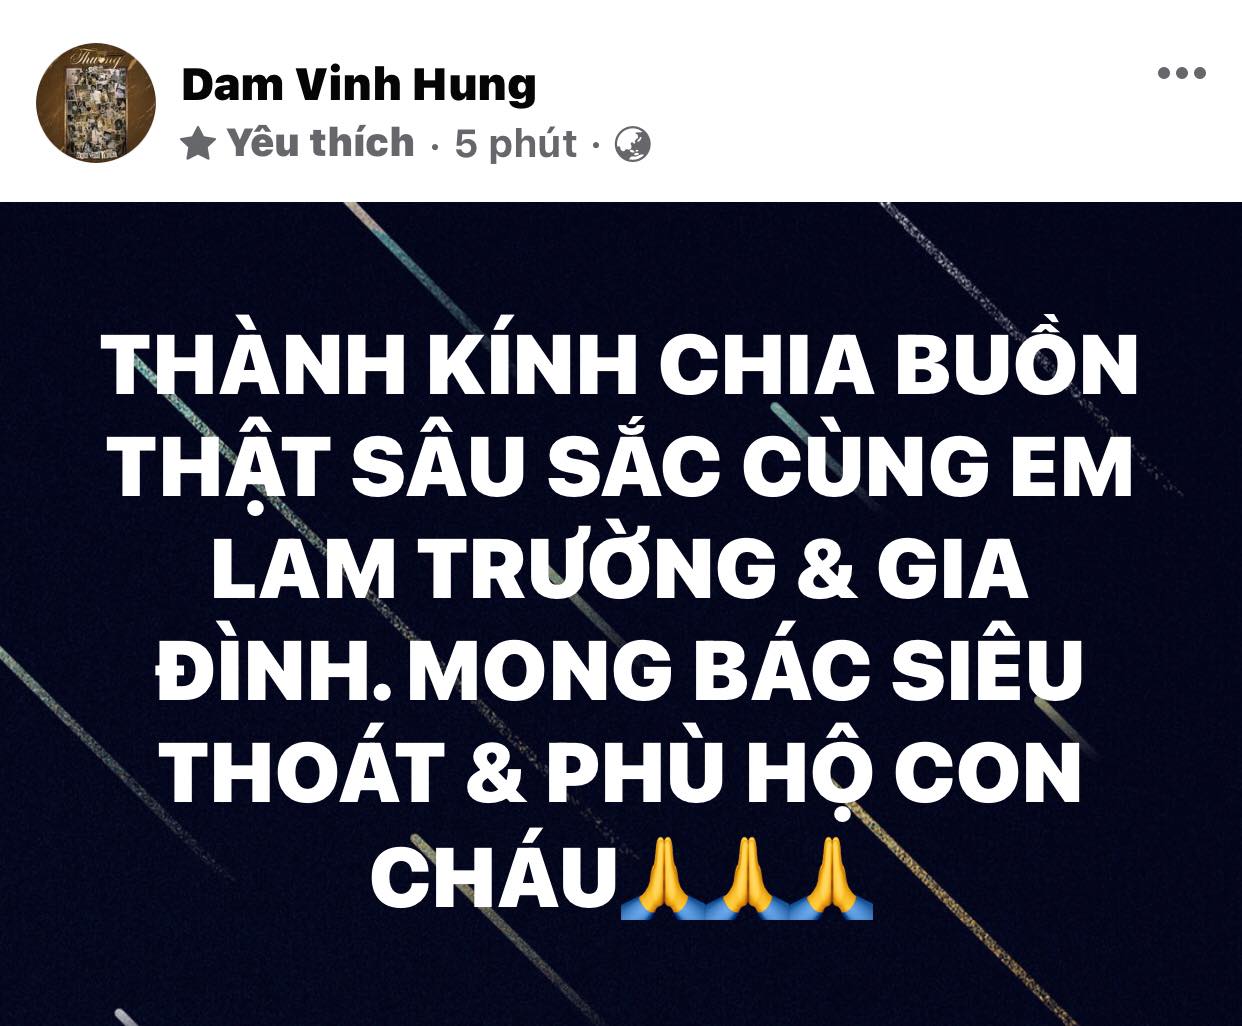 Dam-vinh-hung-xuan-lan-xot-xa-chia-buon-khi-nhan-tin-bo-ca-si-lam-truong-vua-qua-doi